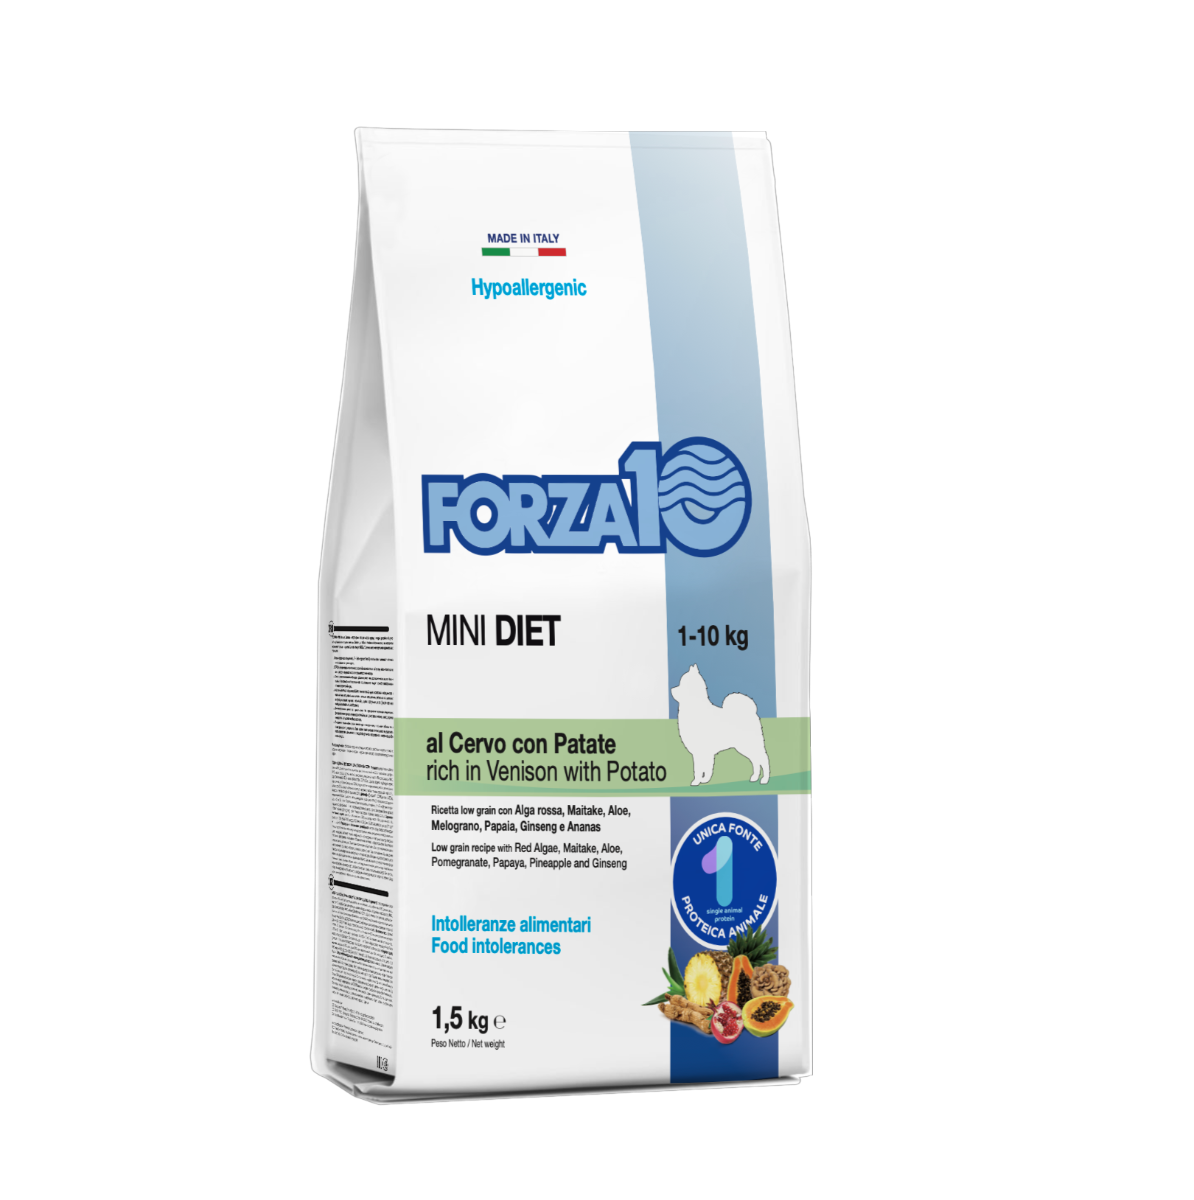 FORZA10  MINI DIET ir pilnvērtīga sabalansēta barība no brieža gaļas un kartupeļiem - hipoalerģiska barība mazo šķirņu suņiem ar barības (barības sastāvdaļu) nepanesību.